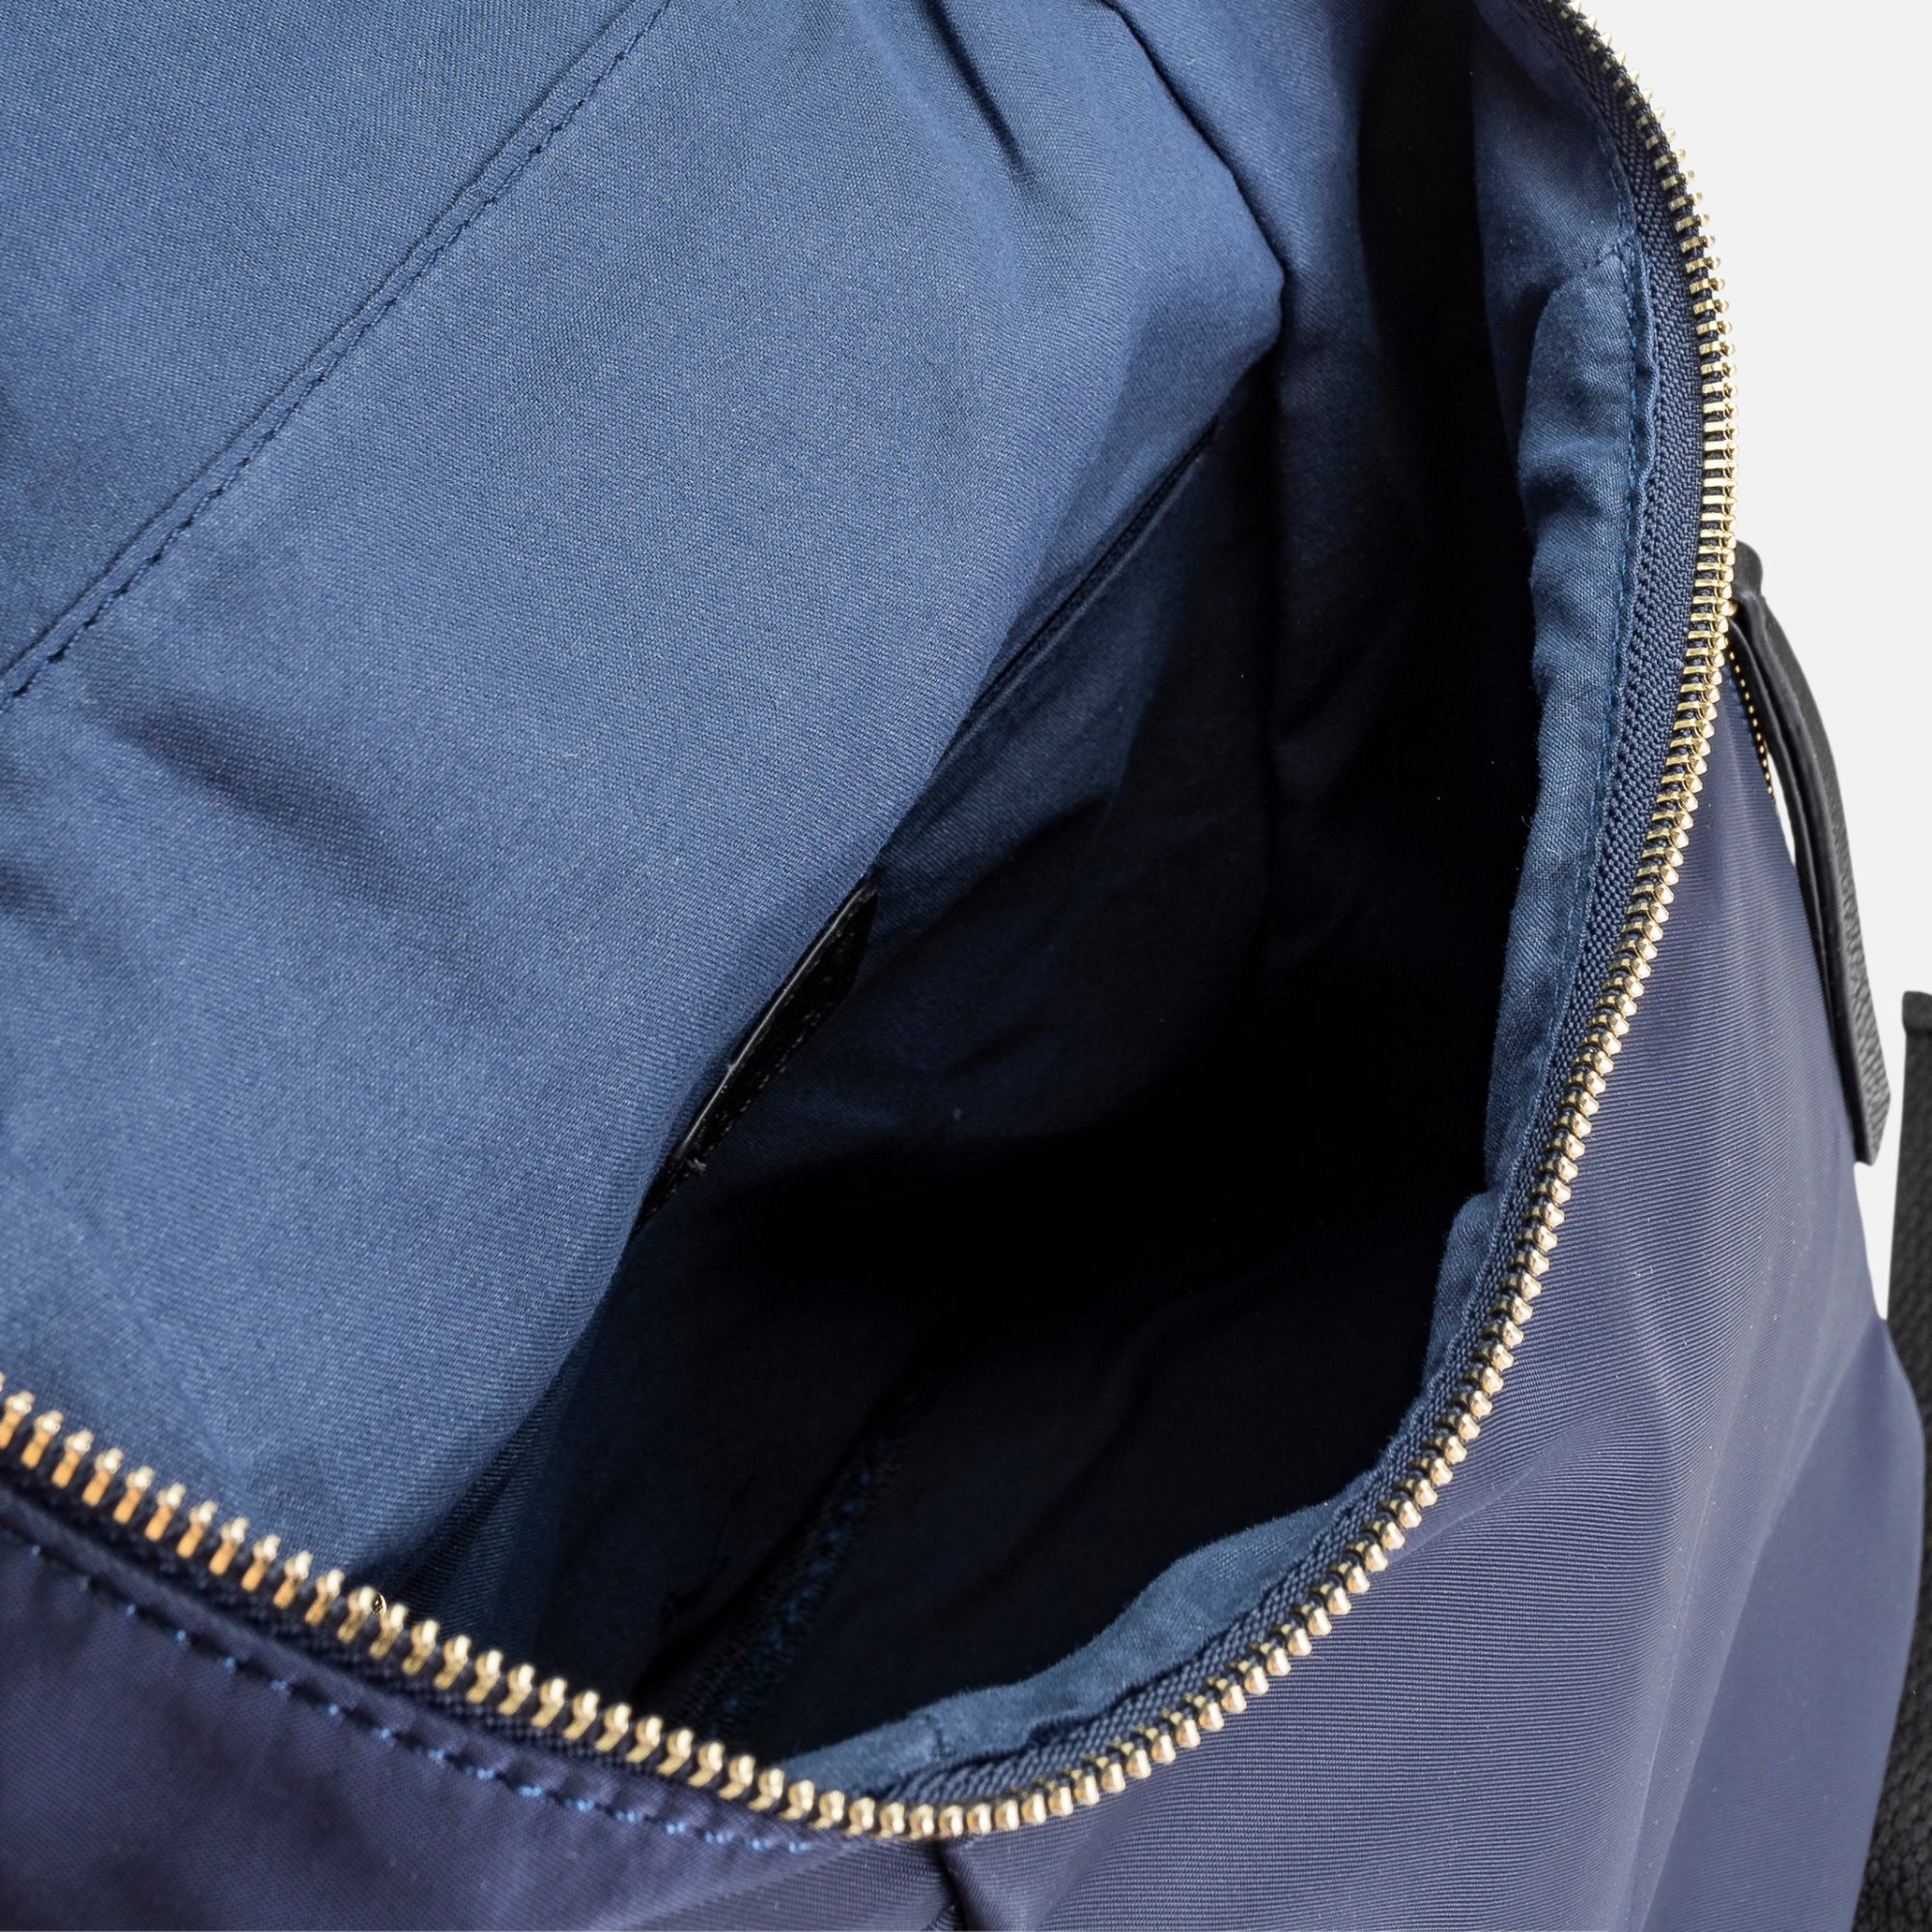 Navy blue nylon zippered backpack